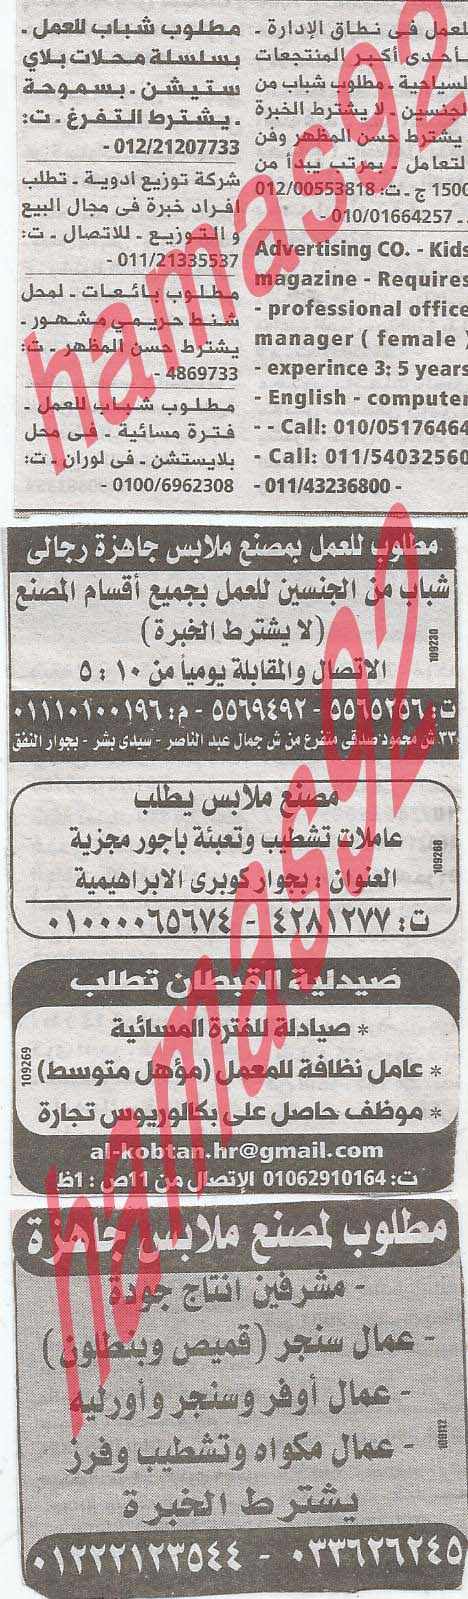 وظائف خالية فى جريدة الوسيط الاسكندرية الثلاثاء 23-04-2013 %D9%88+%D8%B3+%D8%B3+11